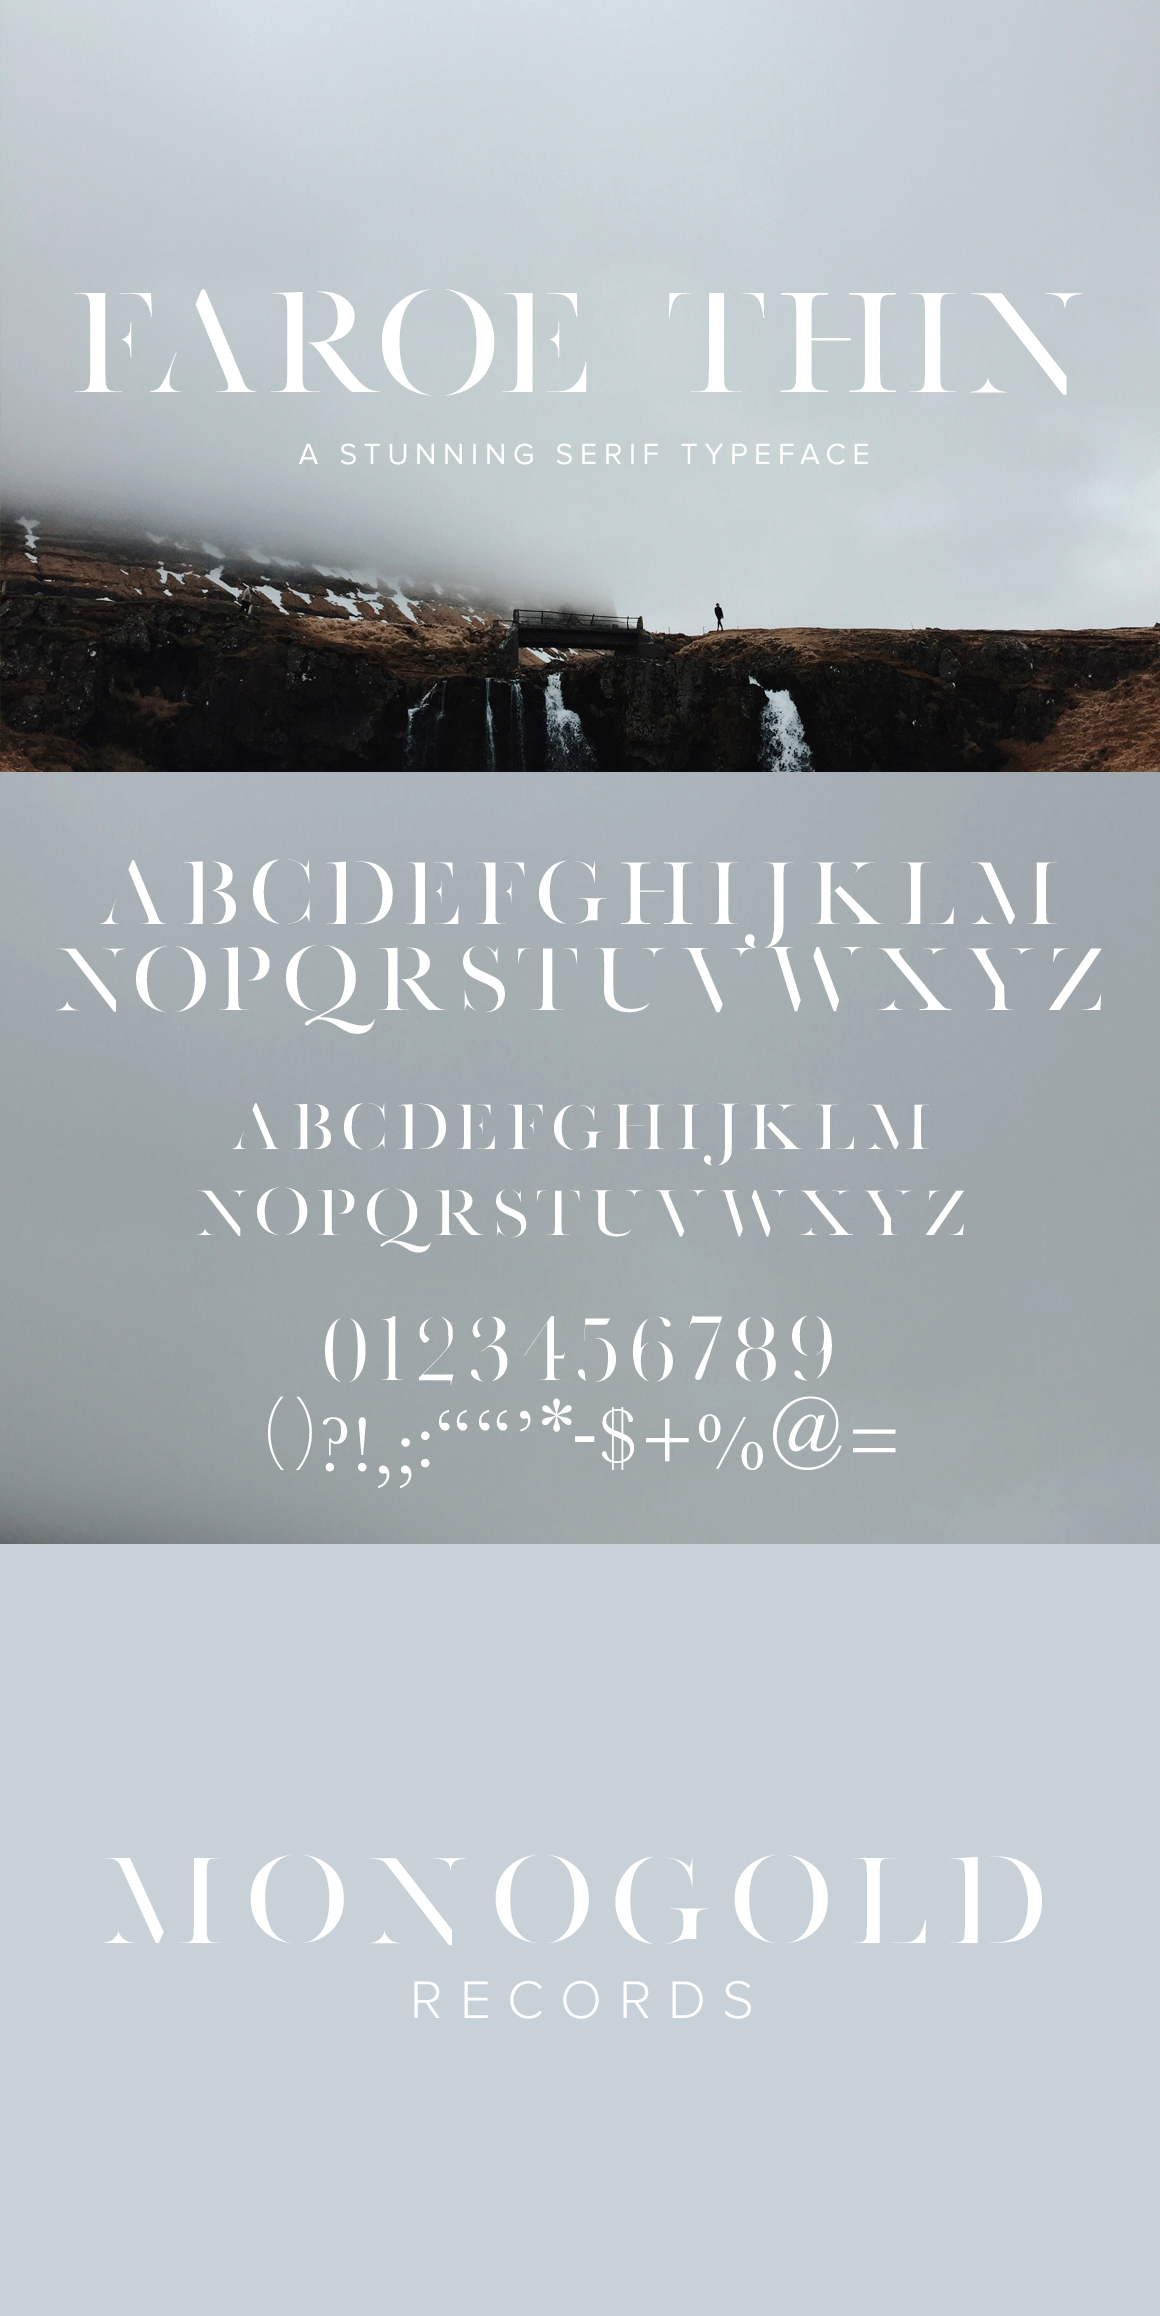 faroe faroe thin Serif Font gap thin Baskerville Logotype minimal jen wagner web font